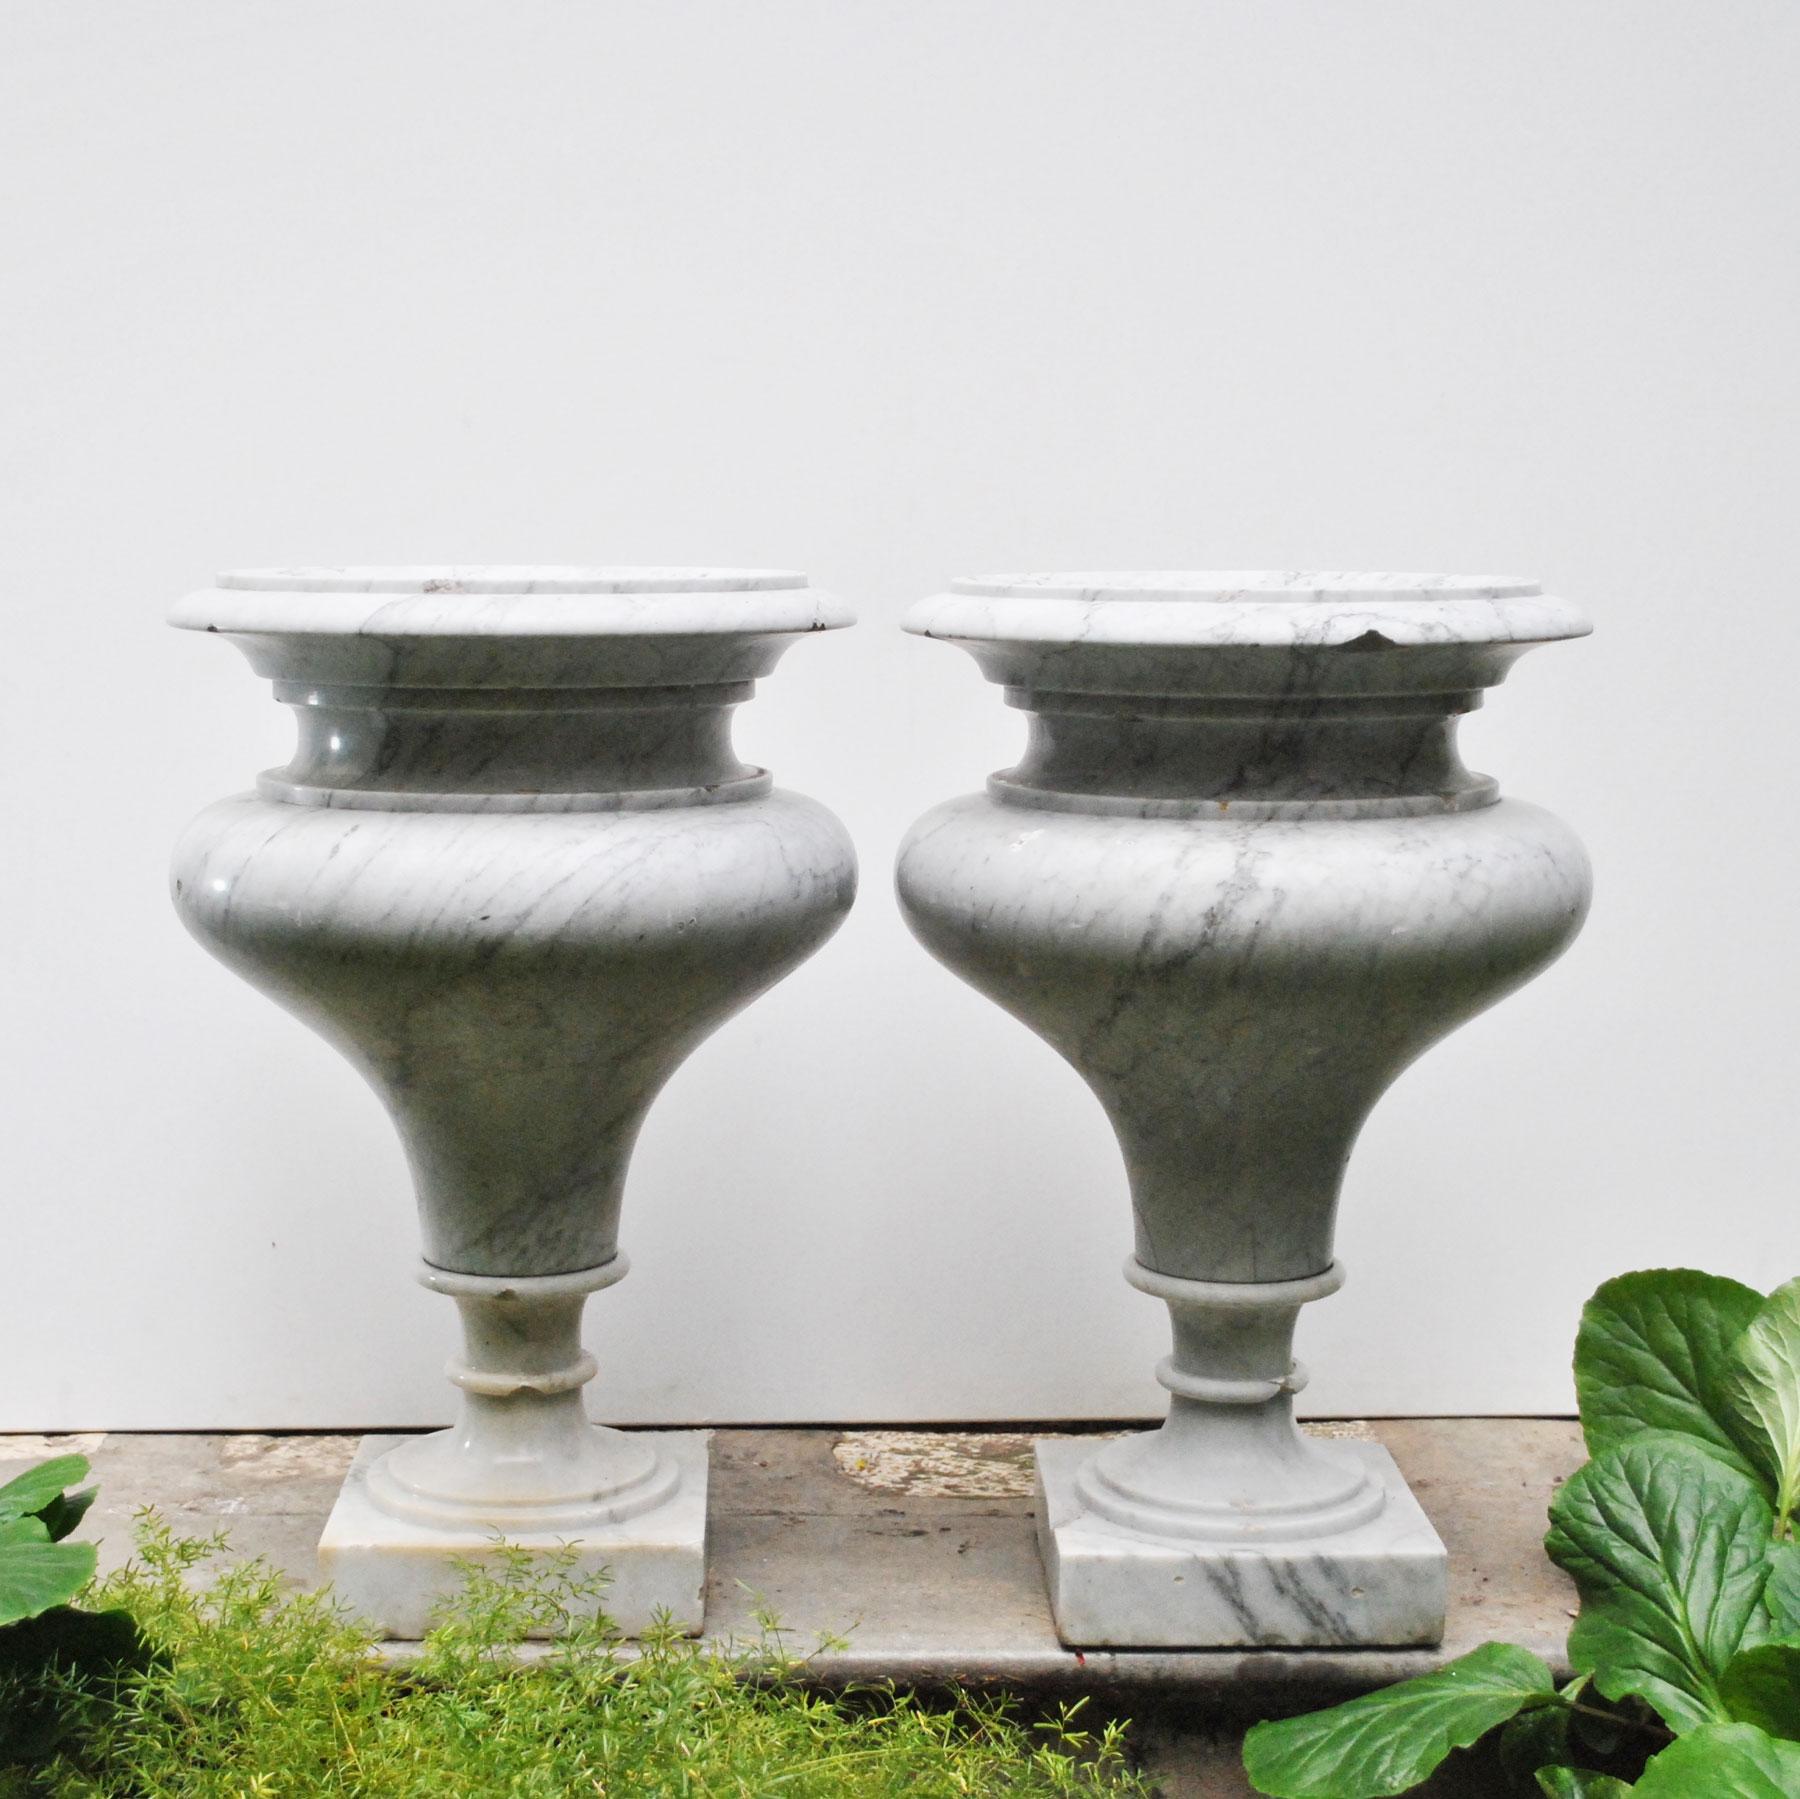 Paire de beaux vases néoclassiques de fabrication italienne de l'école romaine du début du 20e siècle, en marbre de Carrare.
Ces objets uniques ont été trouvés dans les plus charmantes demeures de la capitale réalisés sur commande.De légères traces